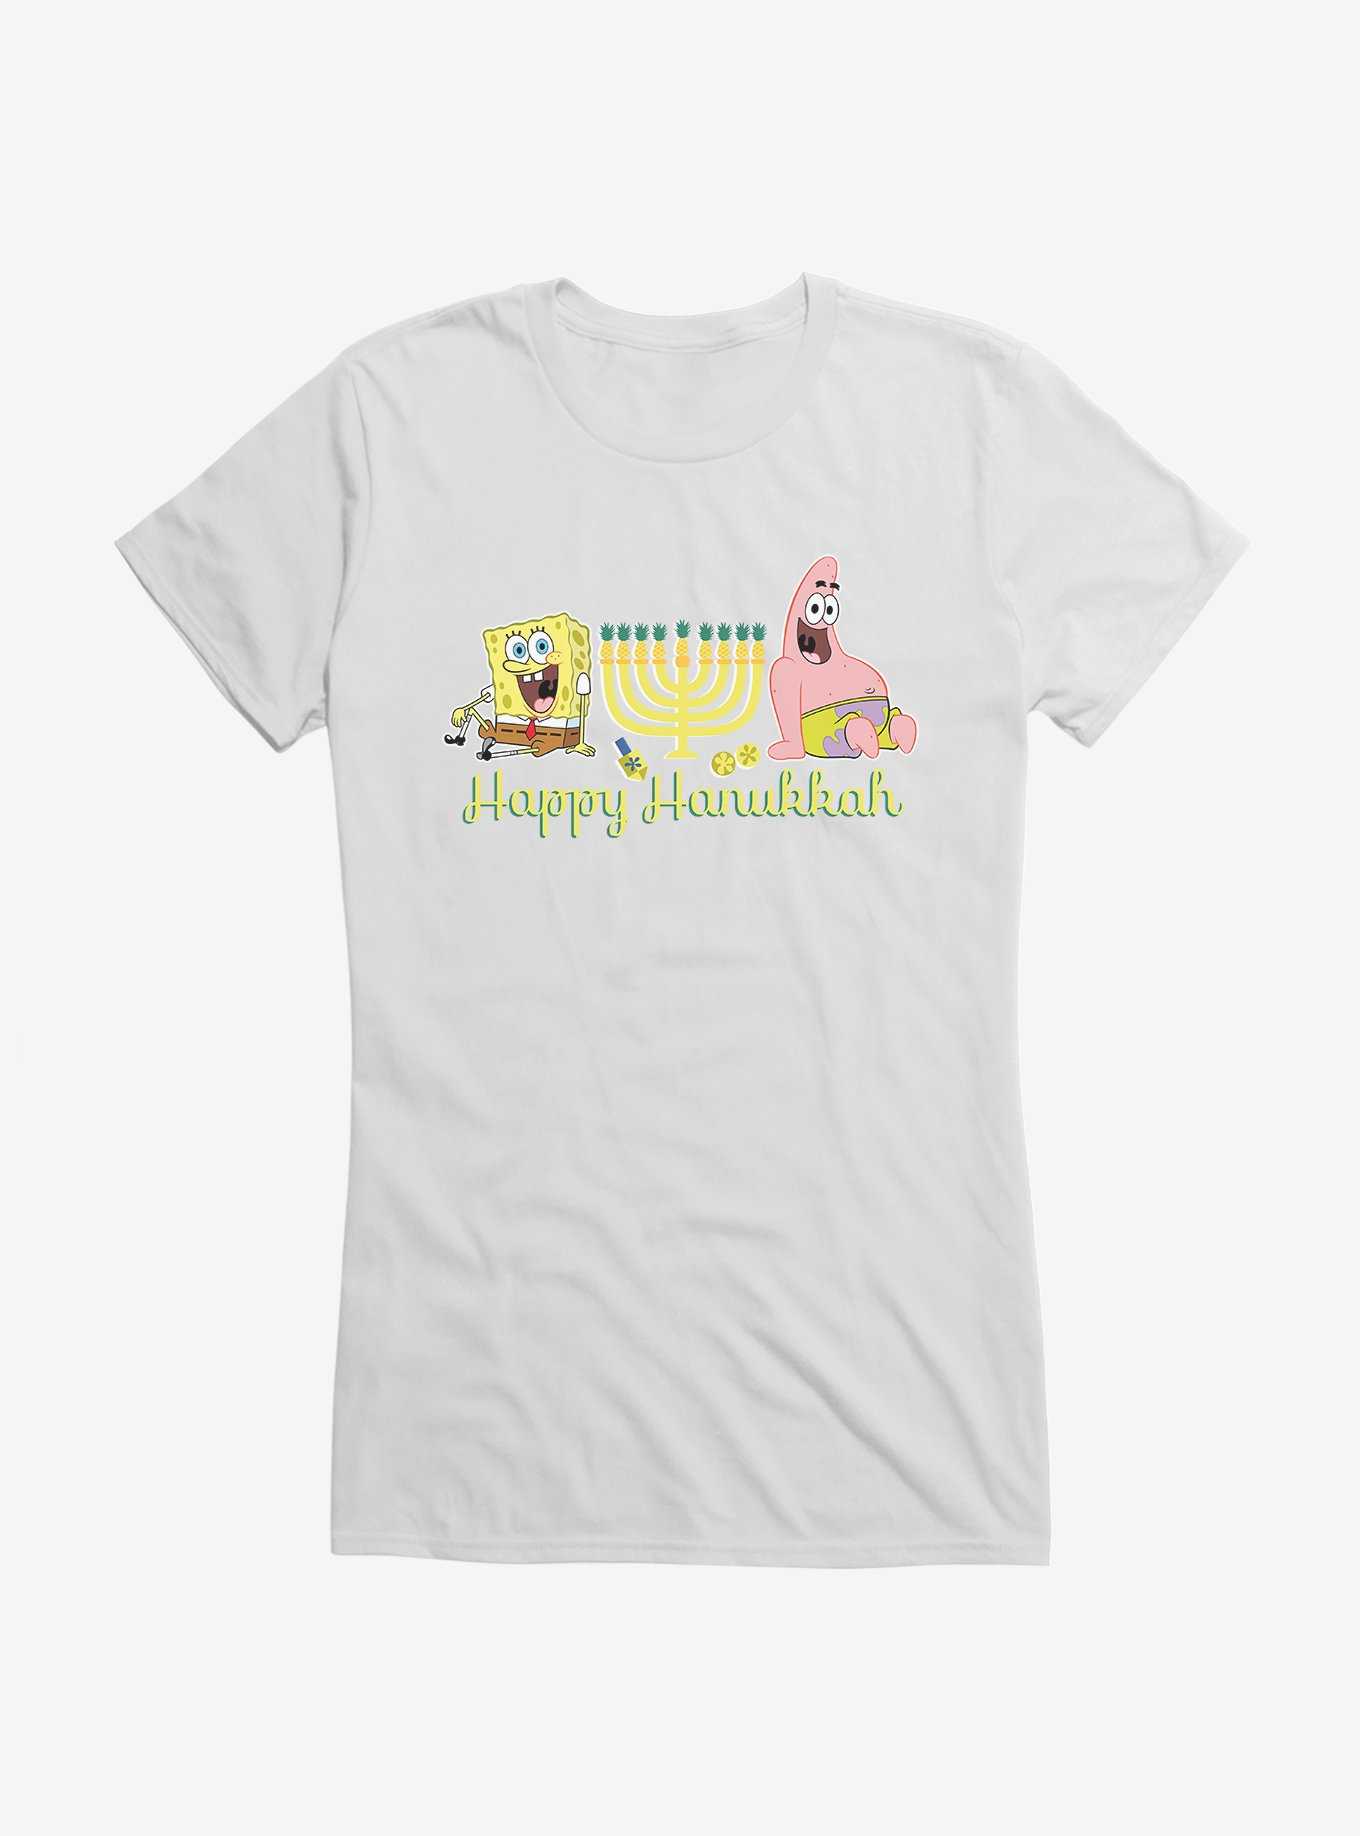 SpongeBob SquarePants Happy Hanukkah Duo Girls T-Shirt, WHITE, hi-res